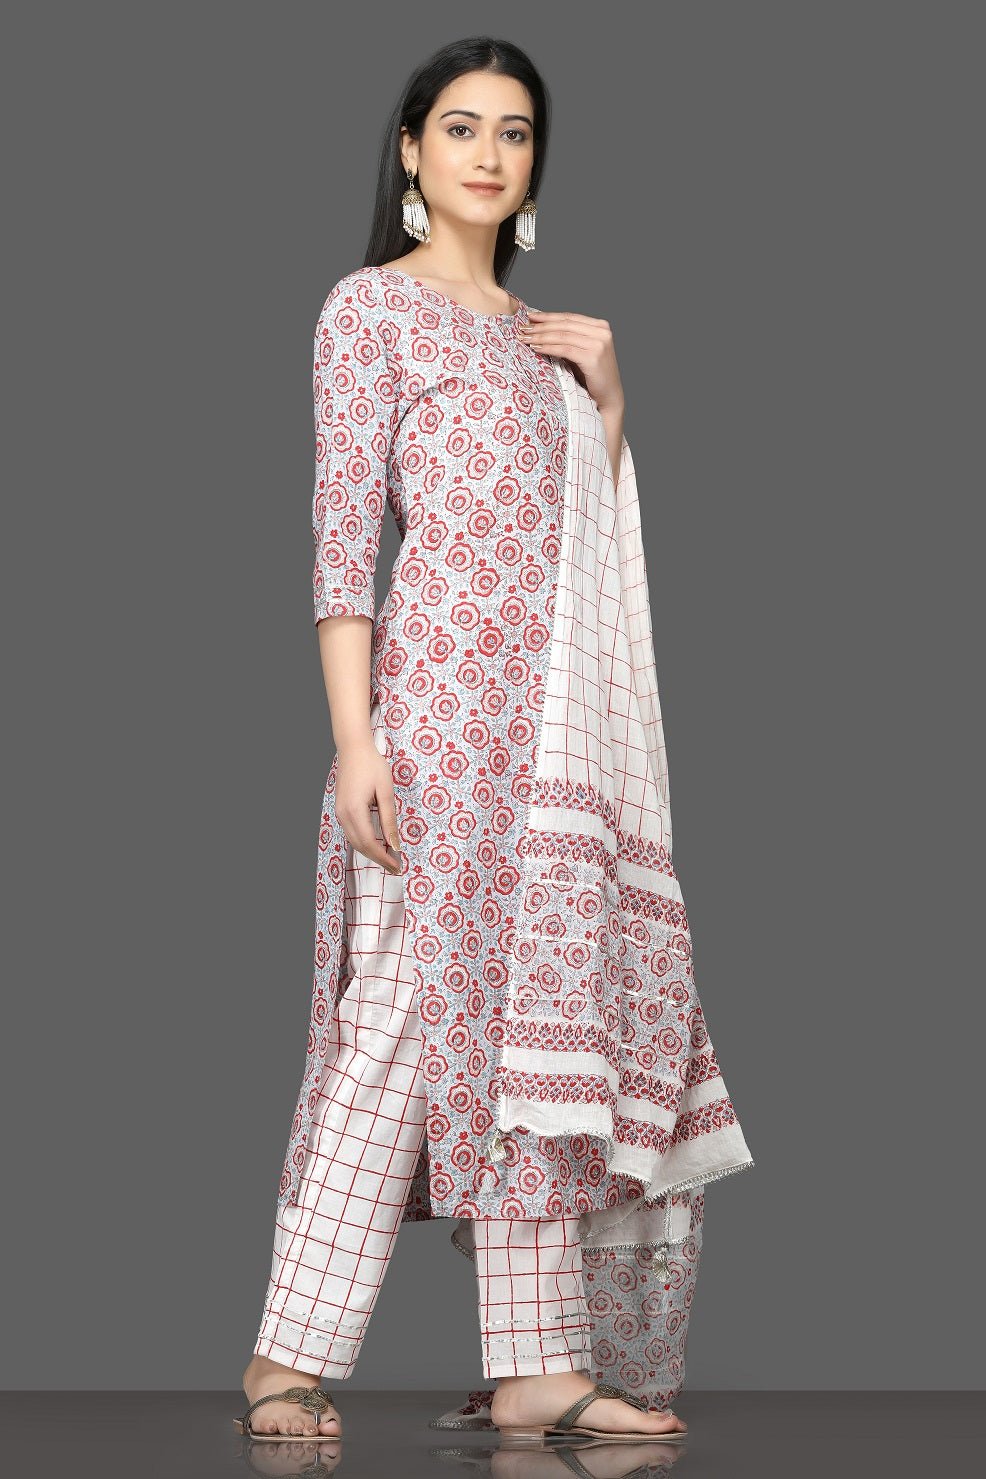 Designer Kalamkari Cotton Suit – Shopin Di Apparels